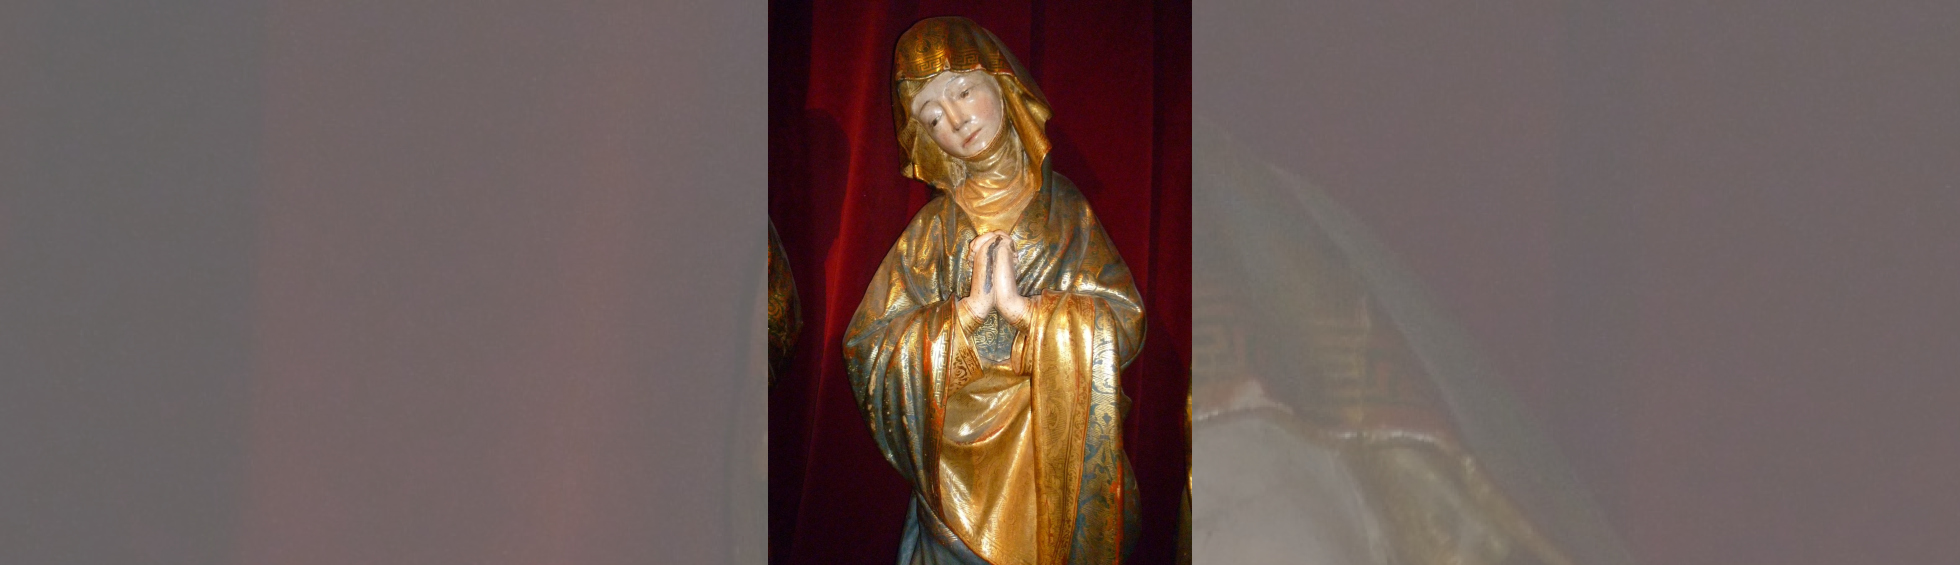 Statue en bois doré :personnage féminin veillant la dépouille du christ